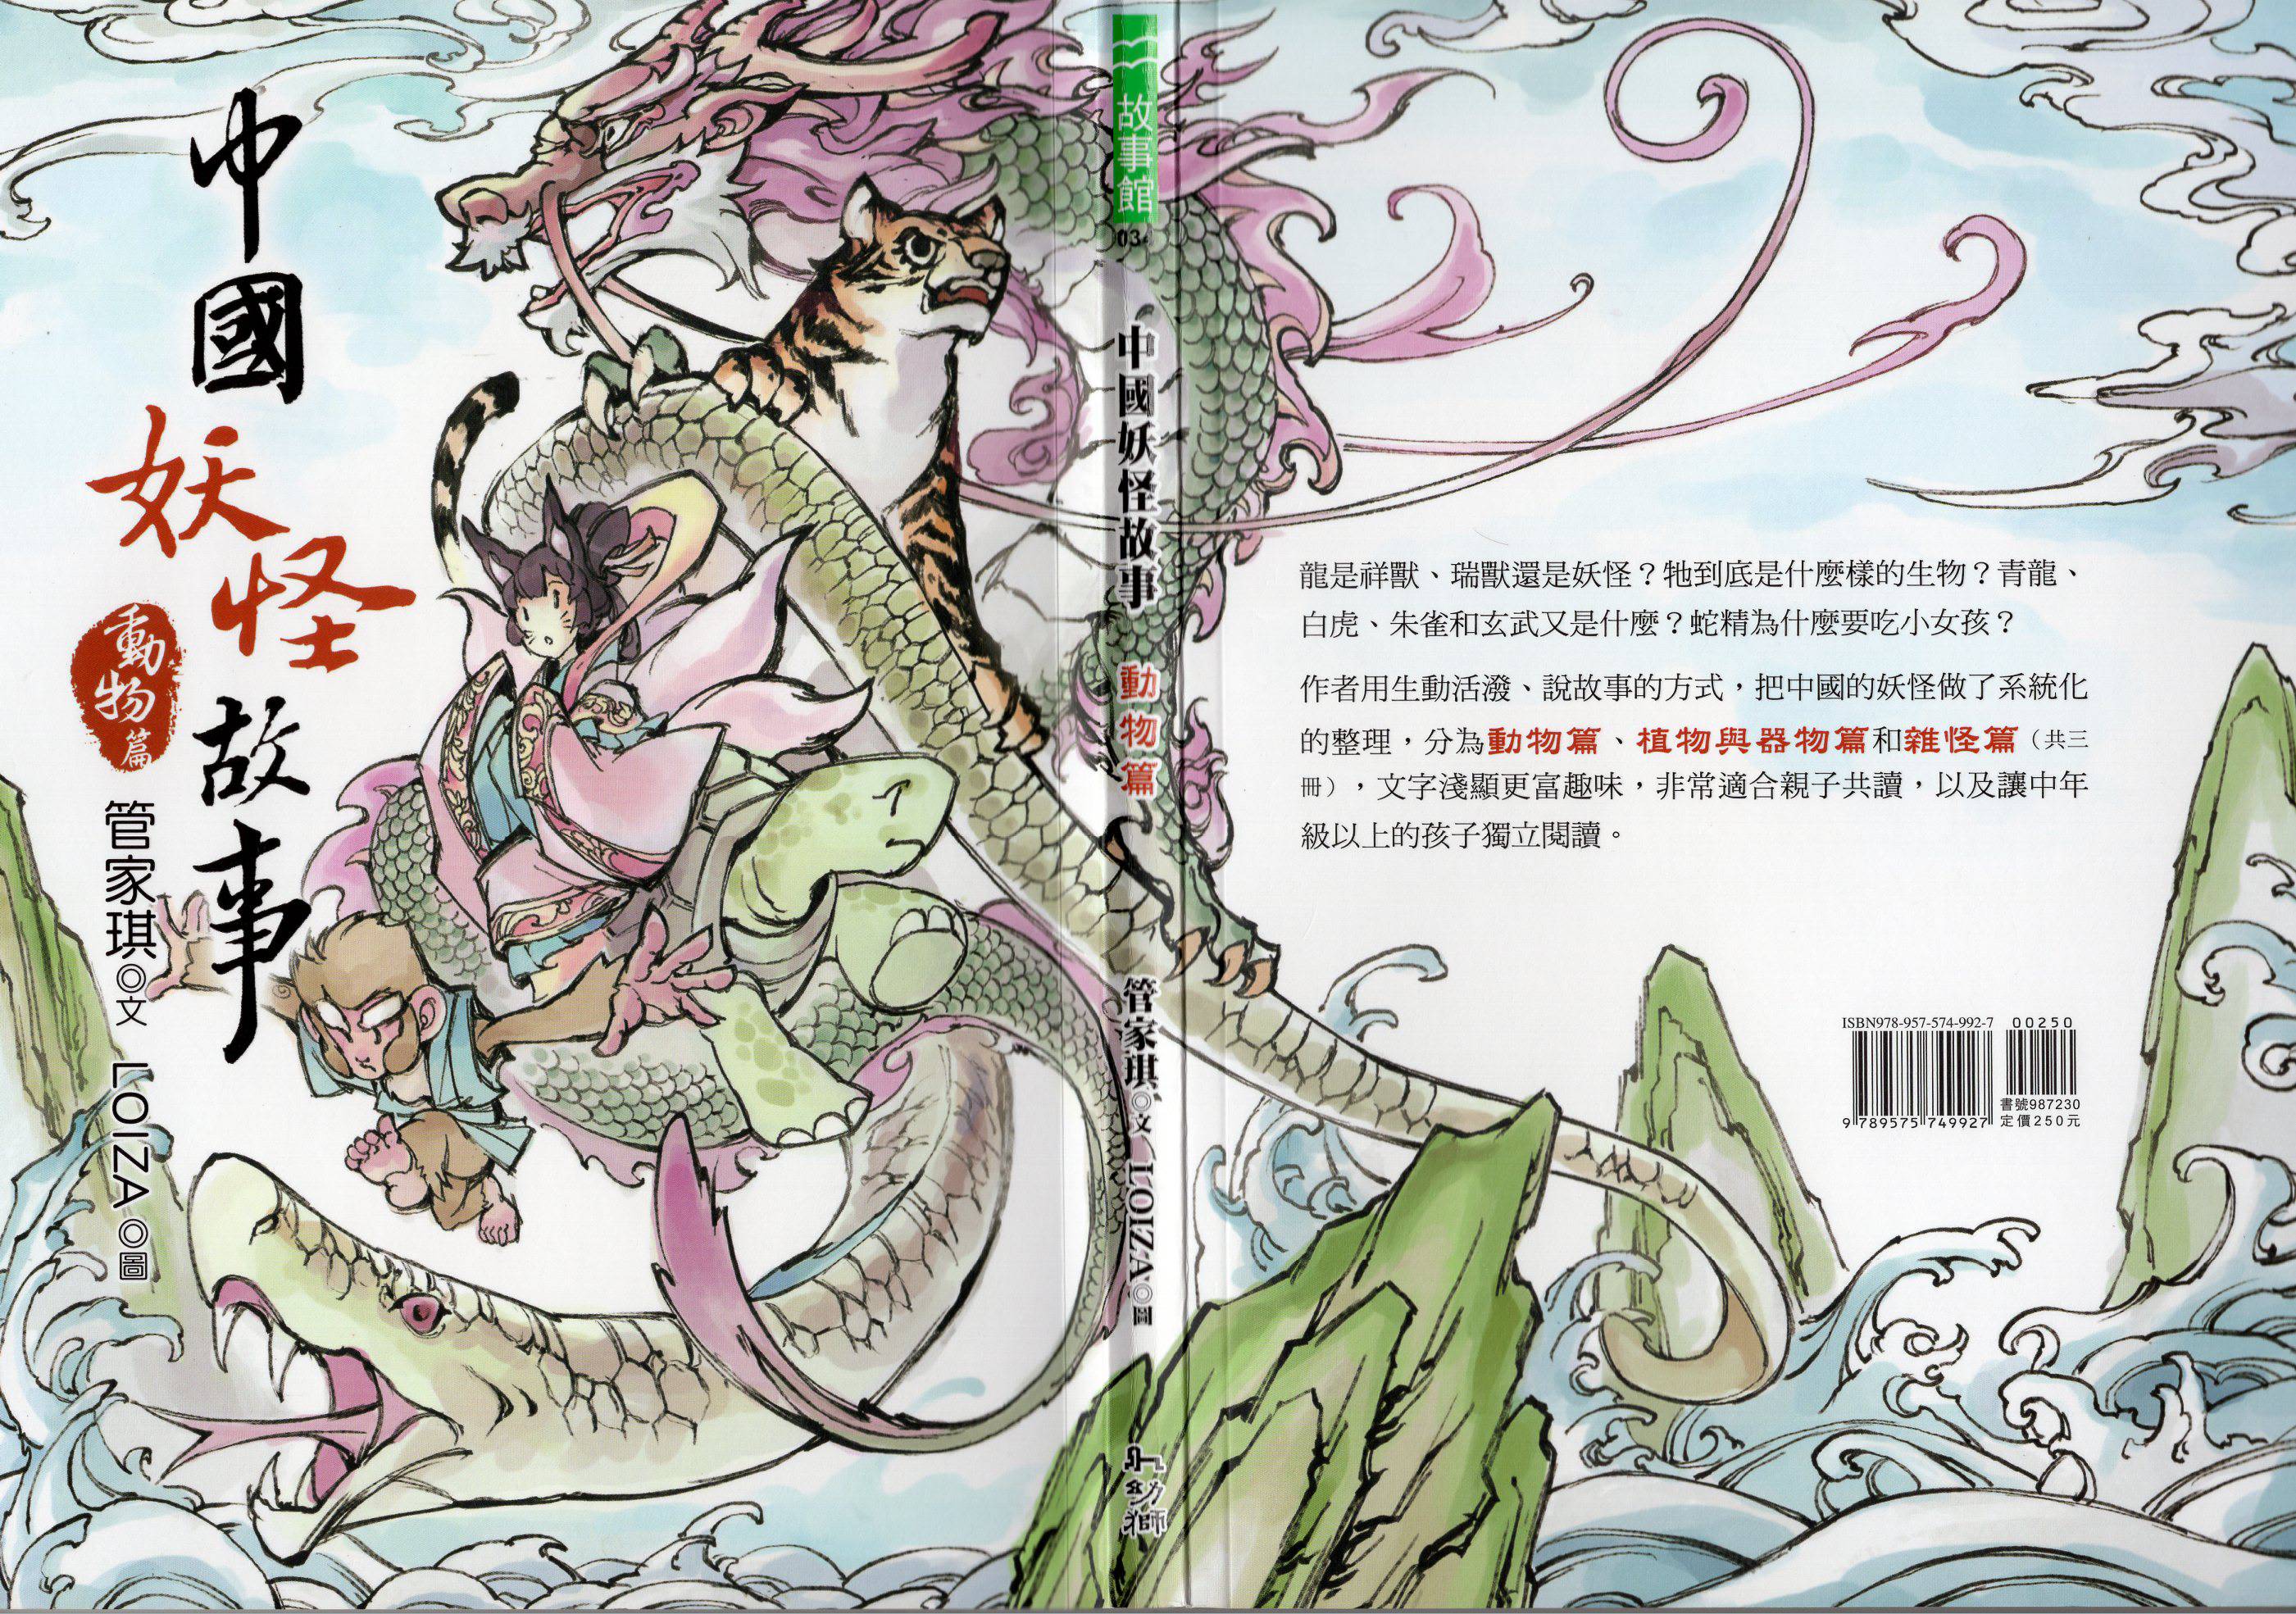 中國妖怪故事 小說掃圖 動物篇 漫畫線上看 動漫戲說 Acgn Cc